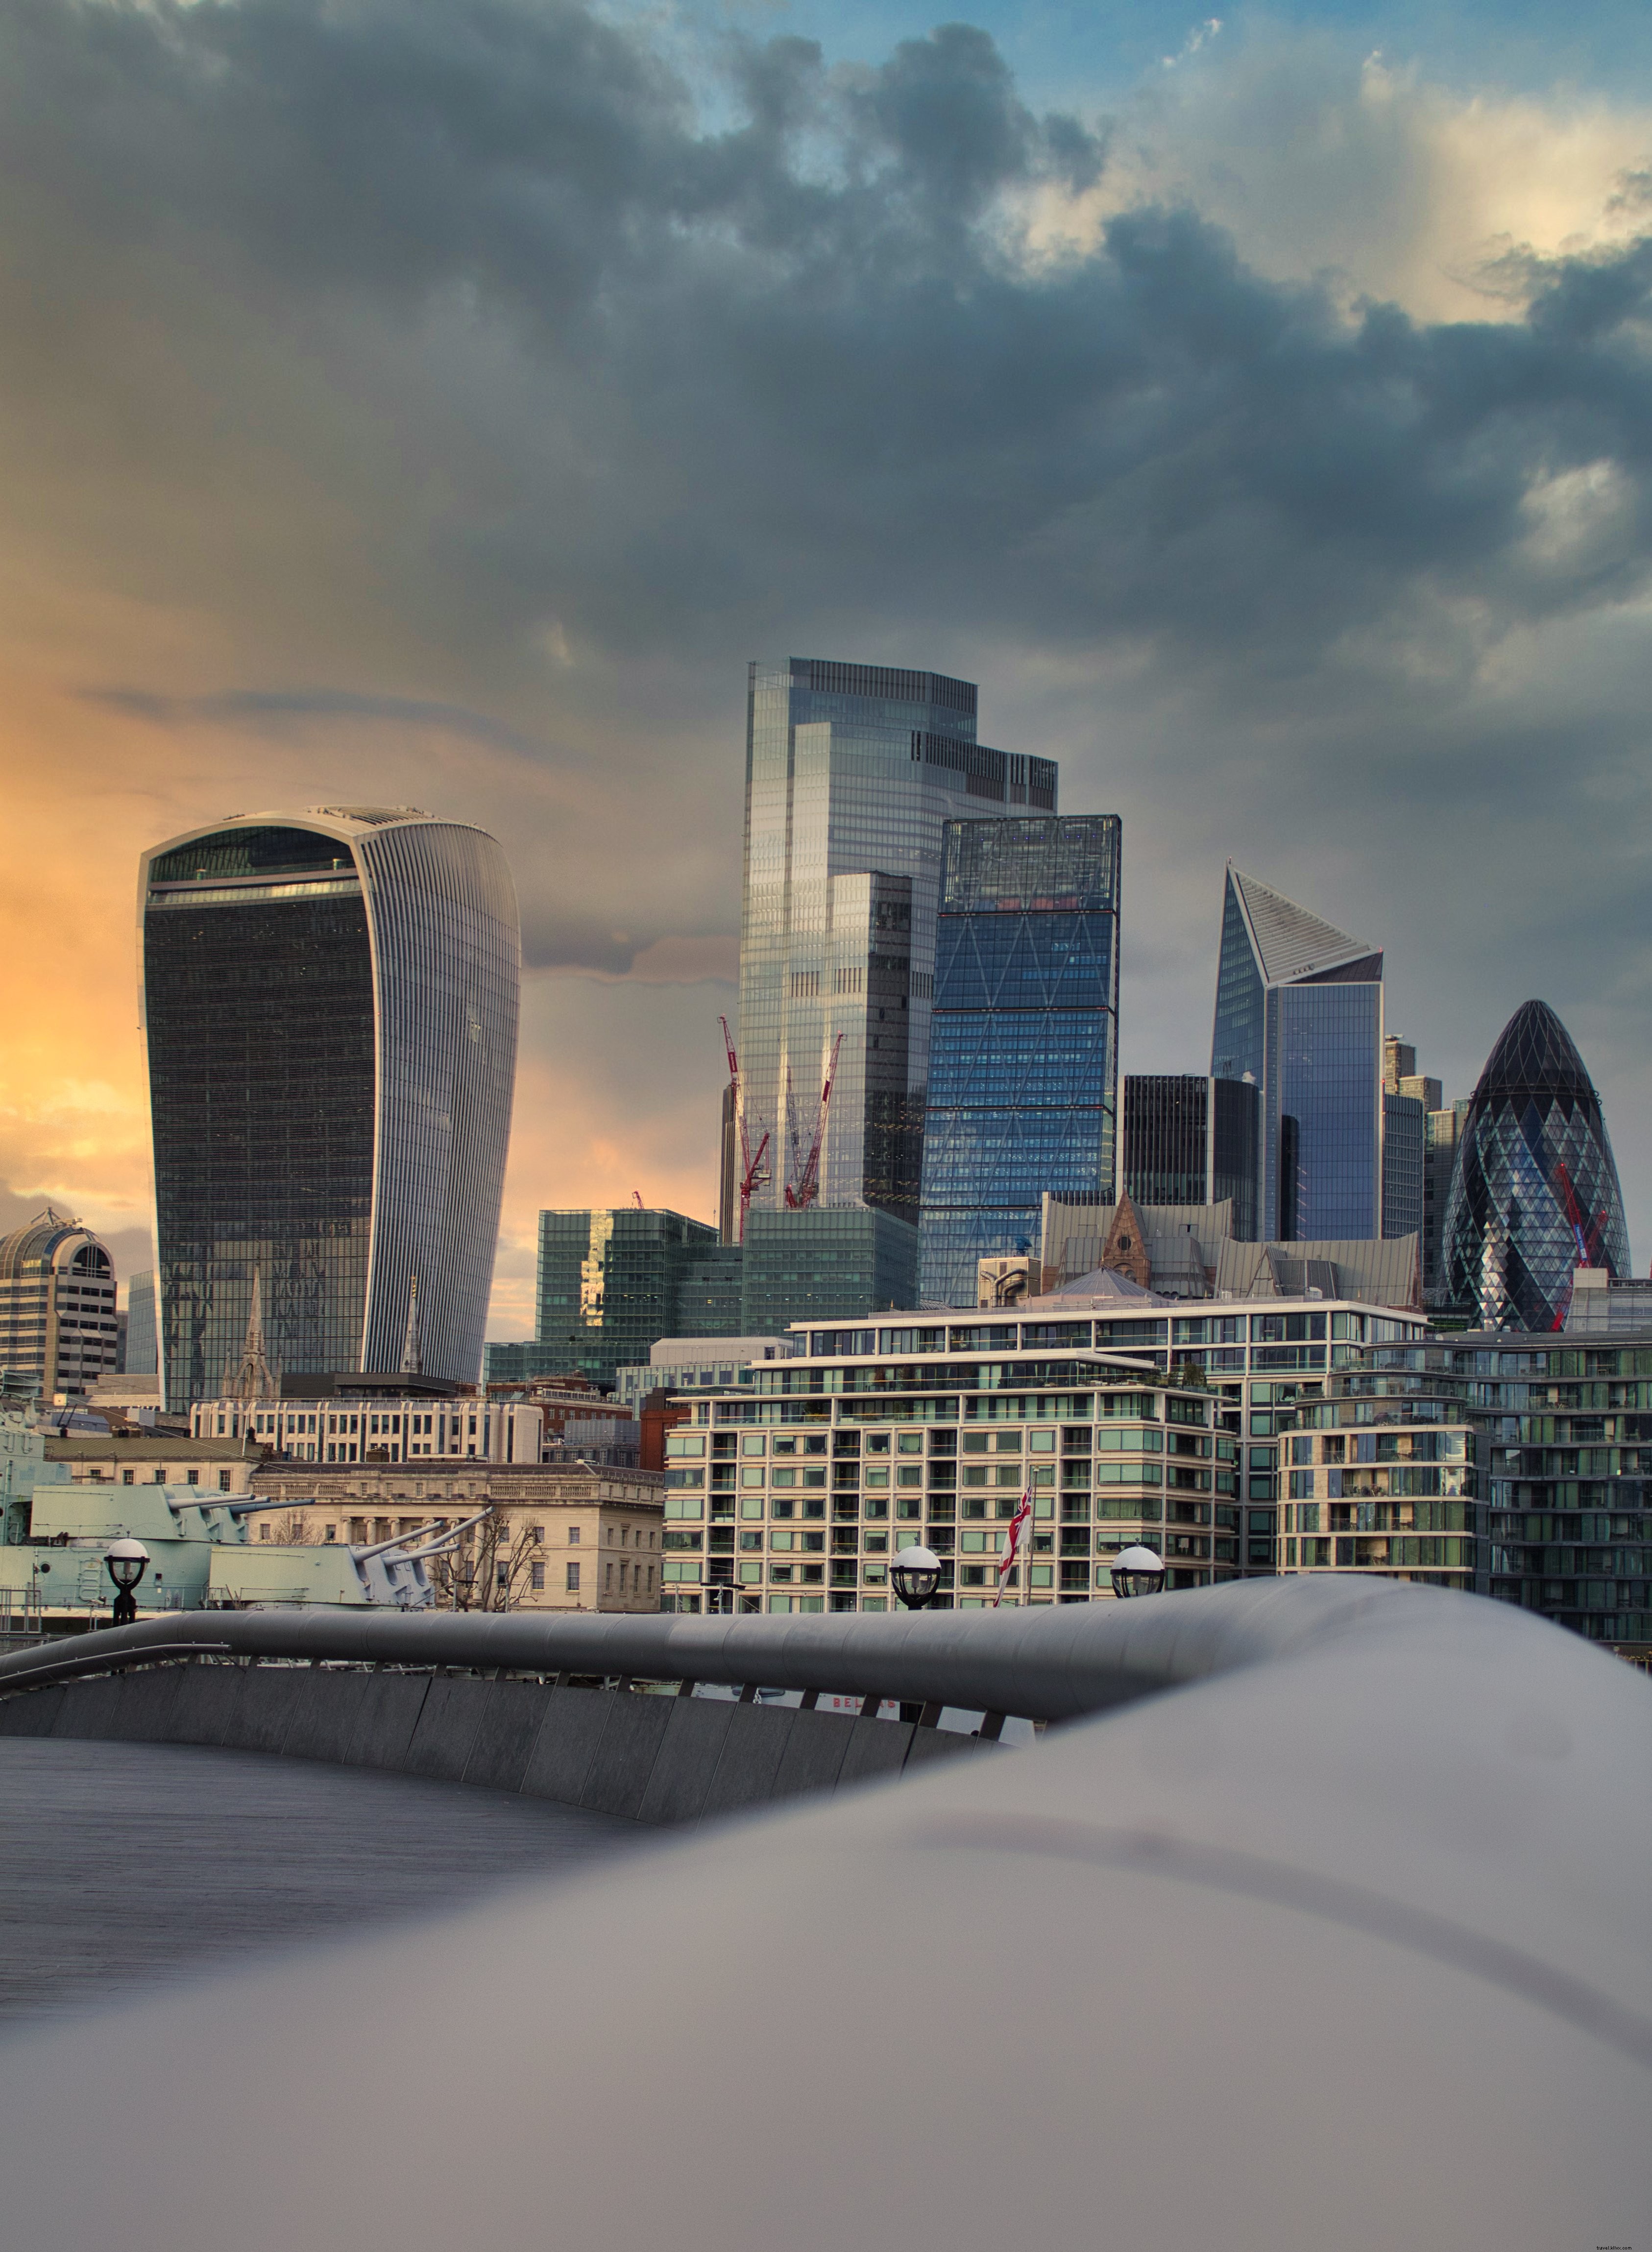 Paisagem urbana de Londres ao pôr do sol nublado com fotos de edifícios de vidro 